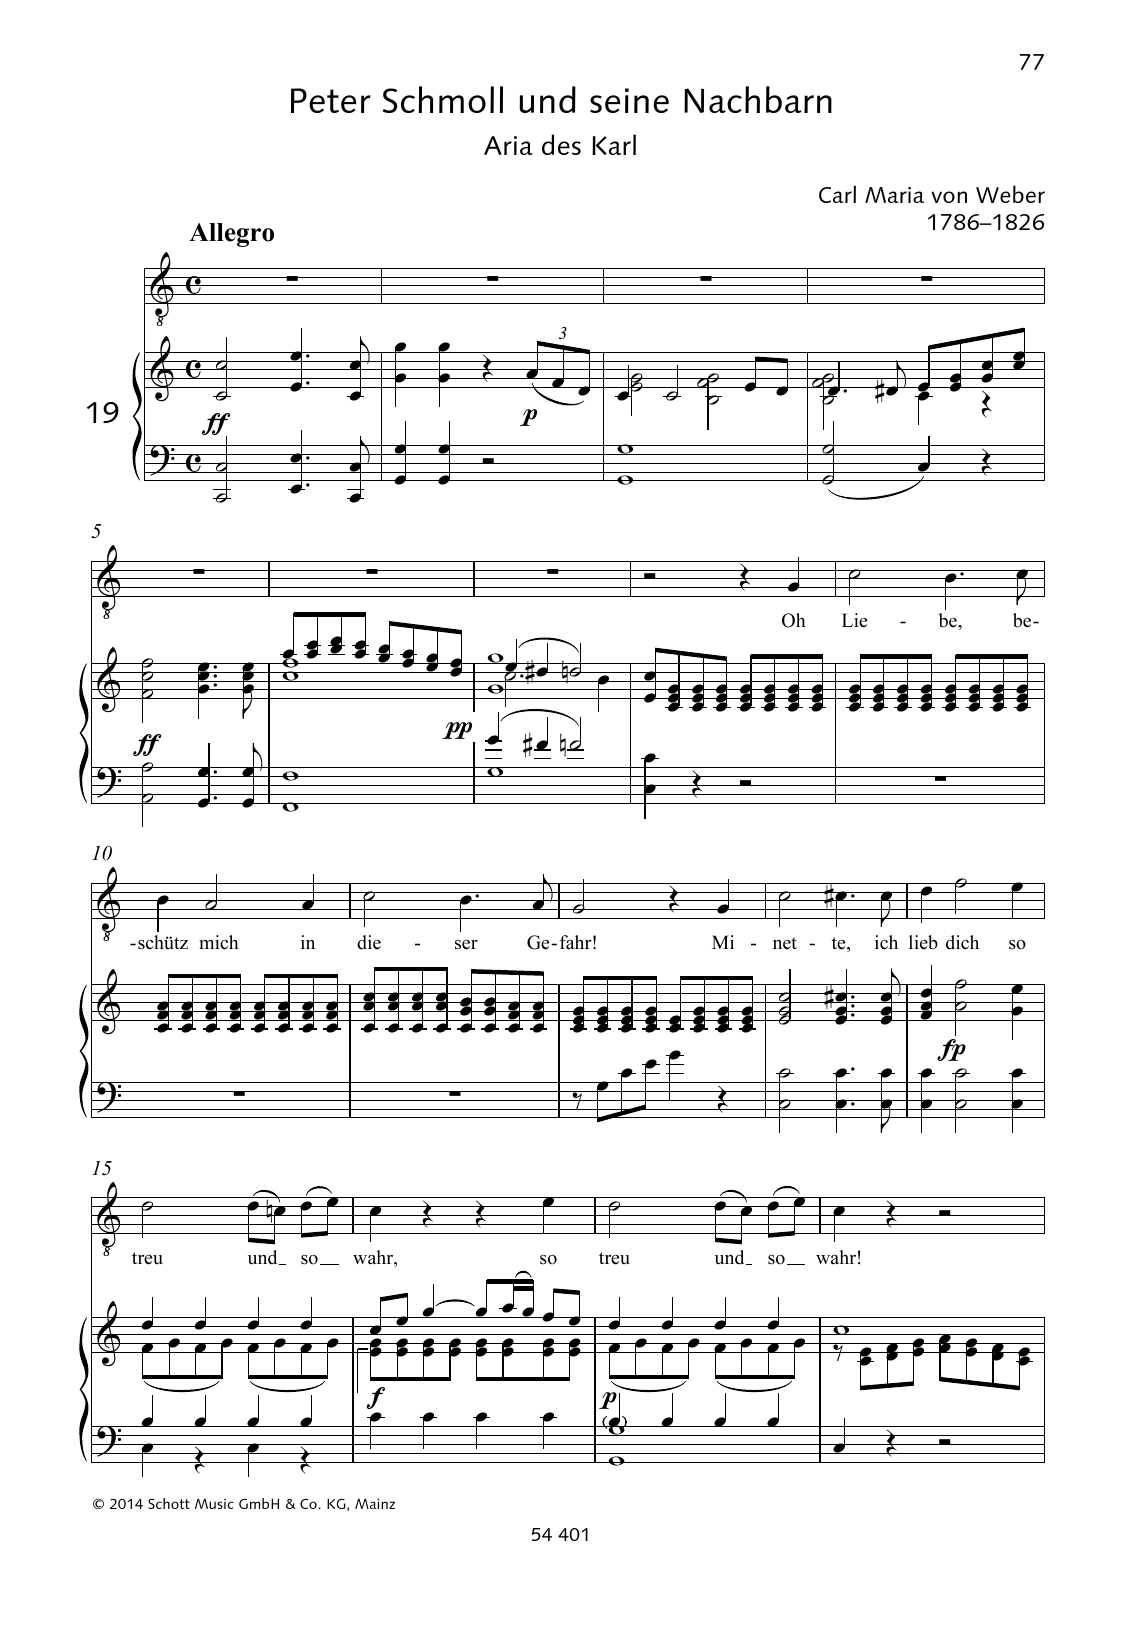 Carl Maria von Weber Oh Liebe, beschütz mich in dieser Gefahr! Sheet Music Notes & Chords for Piano & Vocal - Download or Print PDF